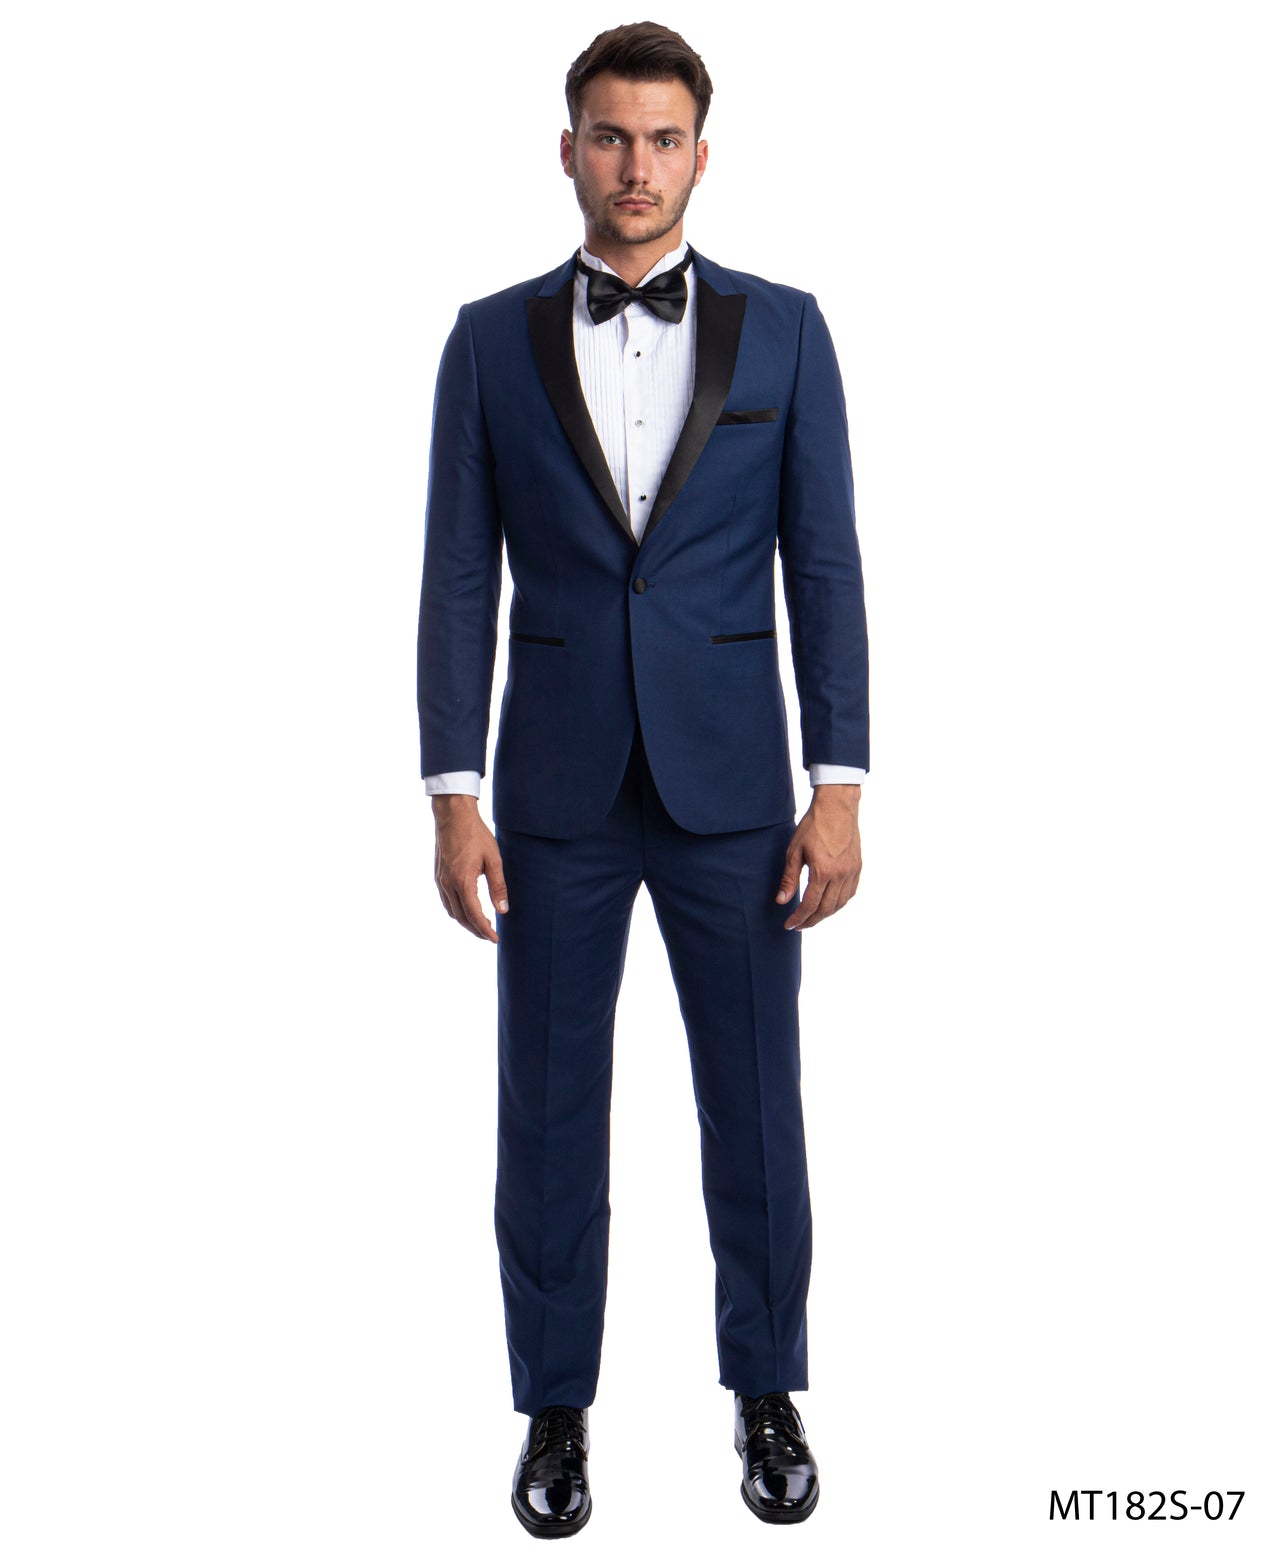 Cobalt/Black Tuxedo Suit For Men Formal Tuxedos For All Ocassions MT182S-07 - Hattitude